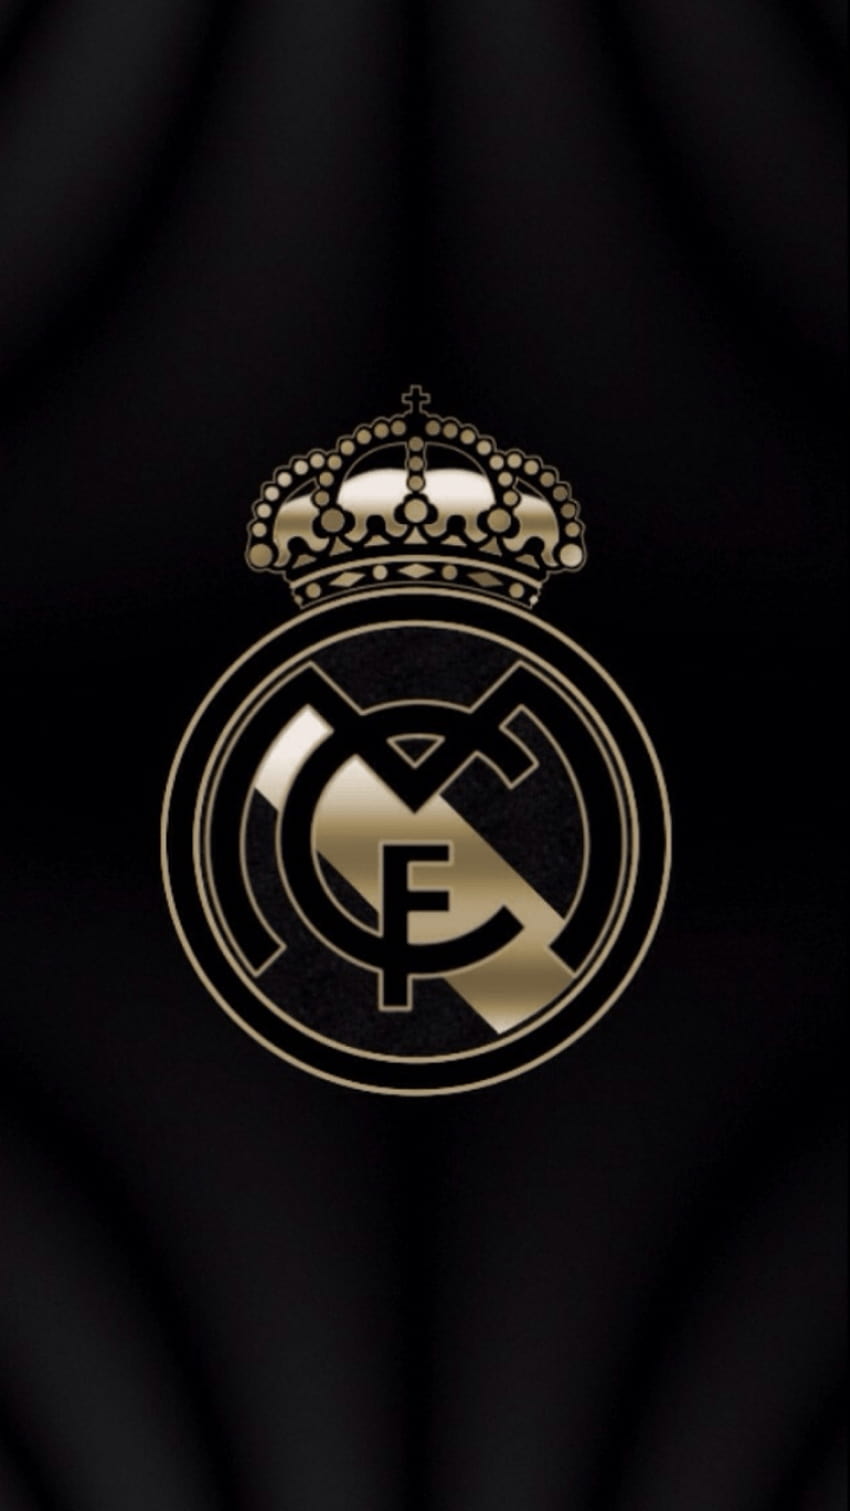 48 Real Madrid iPhone Wallpaper  WallpaperSafari